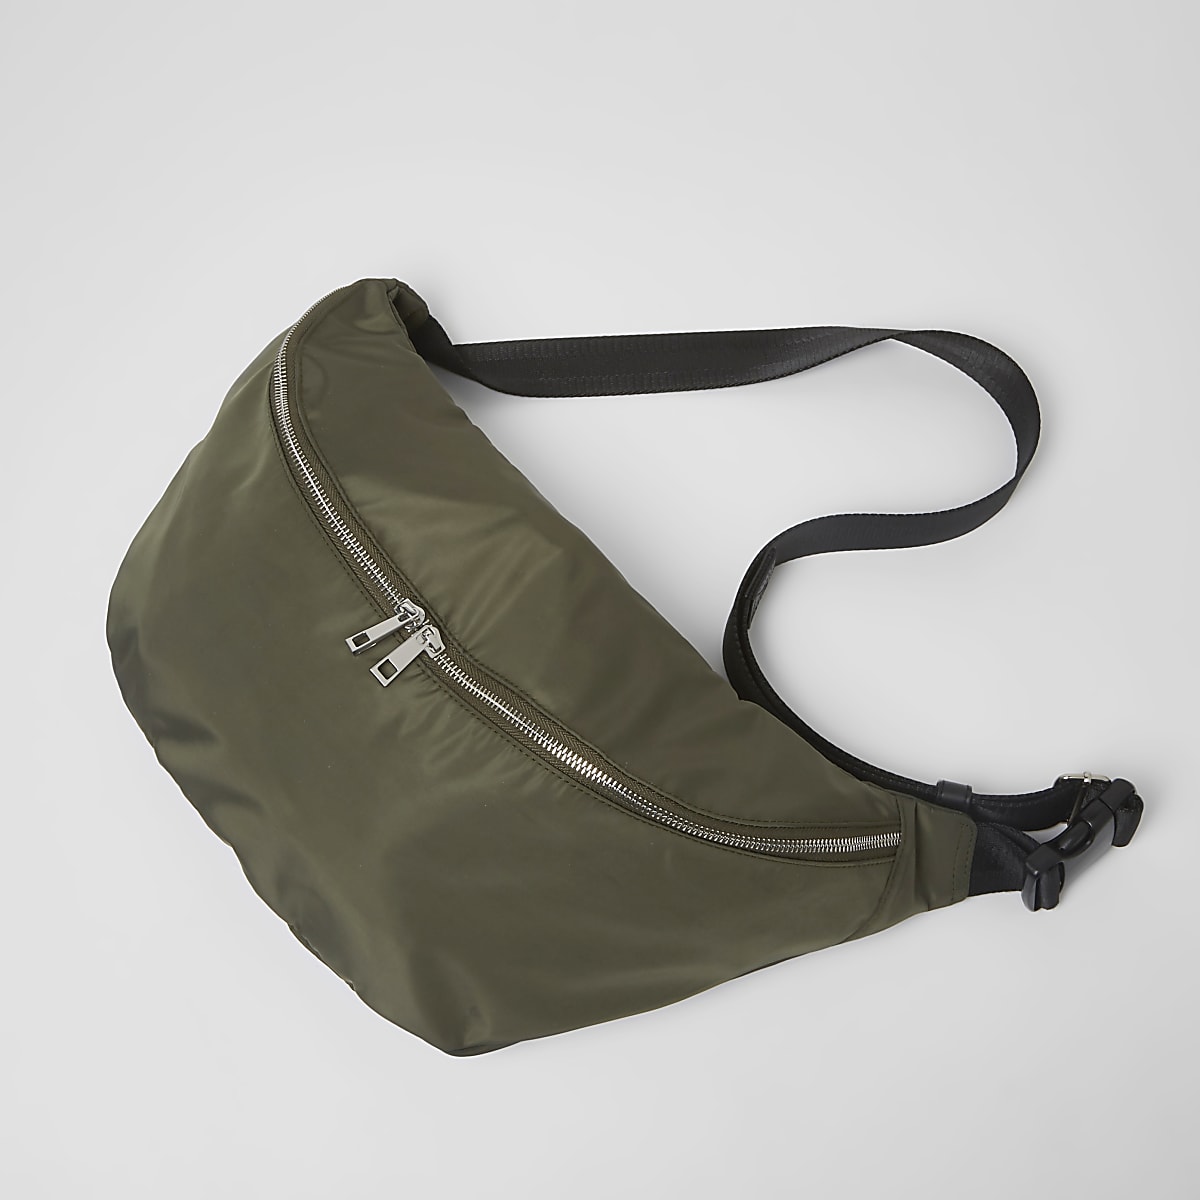 Khaki green crossbody sling bag - Backpacks / Rucksacks - Bags - men